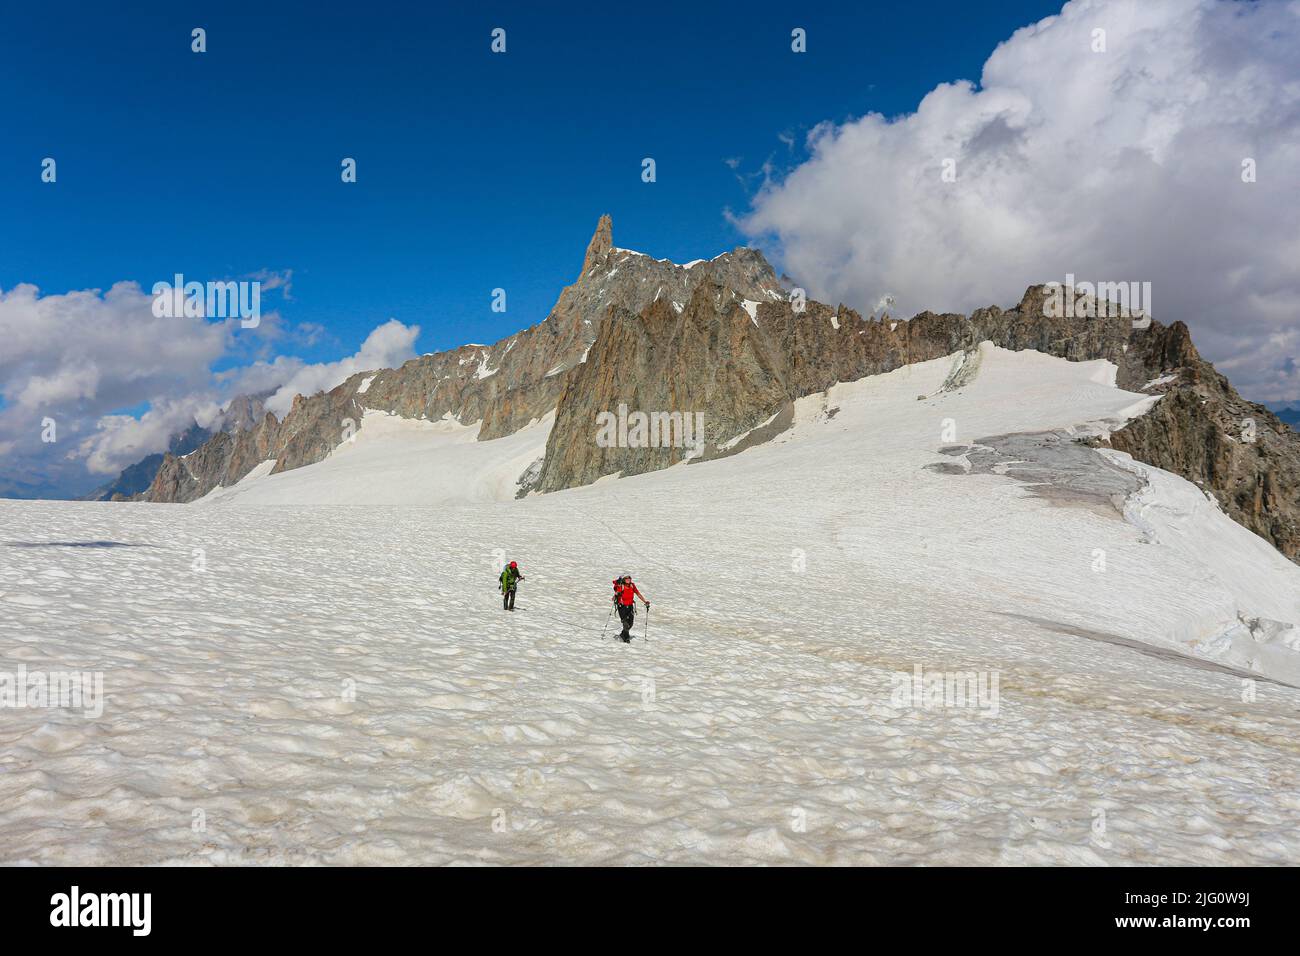 Arrampicatori sul ghiacciaio del gigante del massiccio del Monte Bianco. Chamonix, Francia - Agosto 2018 Foto Stock